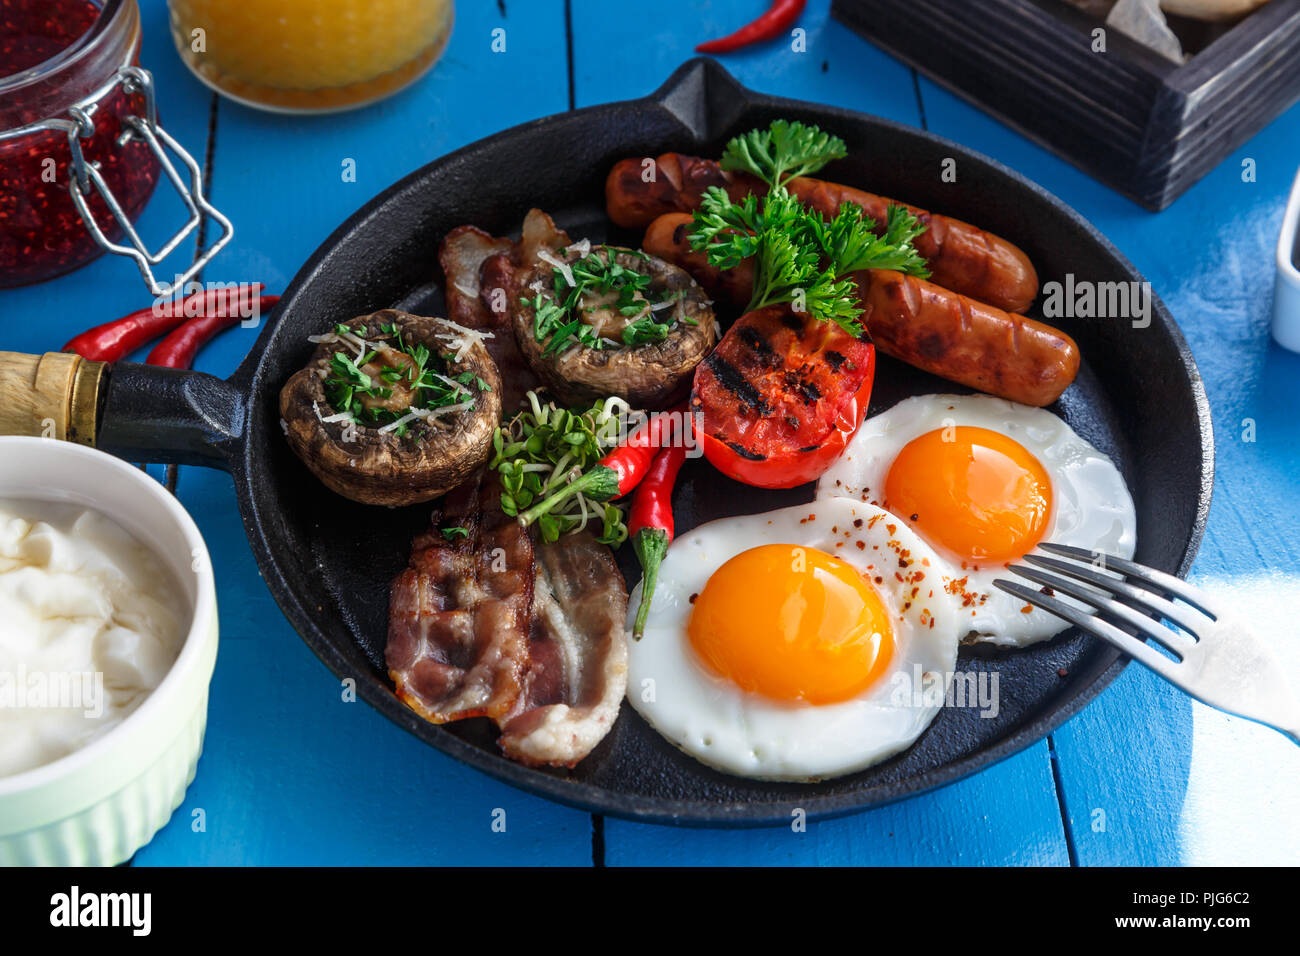 Ansicht schließen Englisches Frühstück in einer Pfanne mit Spiegelei, Würstchen, Speck, Pilzen, Marmelade und Orangensaft auf hölzernen Hintergrund Stockfoto